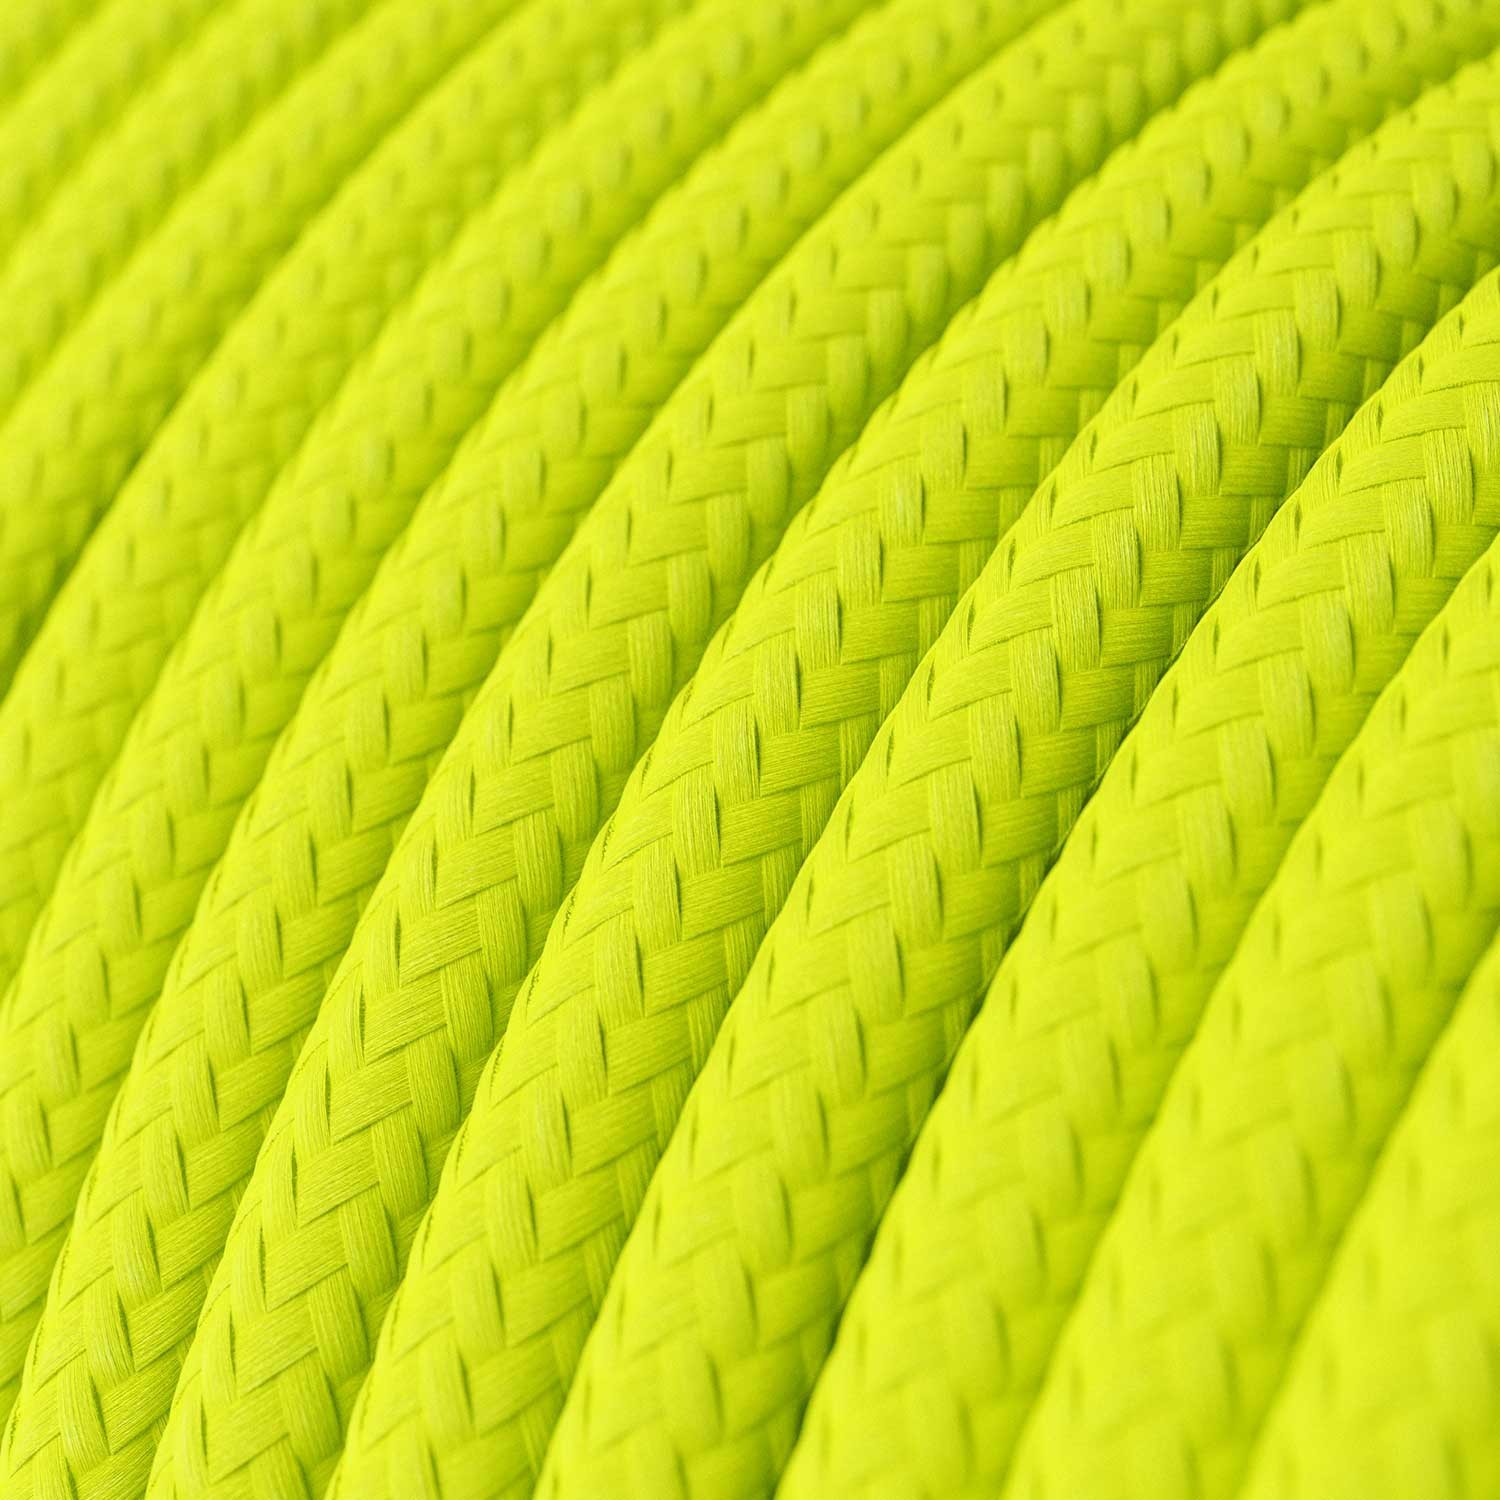 Okrúhly textilný elektrický kábel, umelý hodváb, jednofarebný, RF10 Fluo žltá